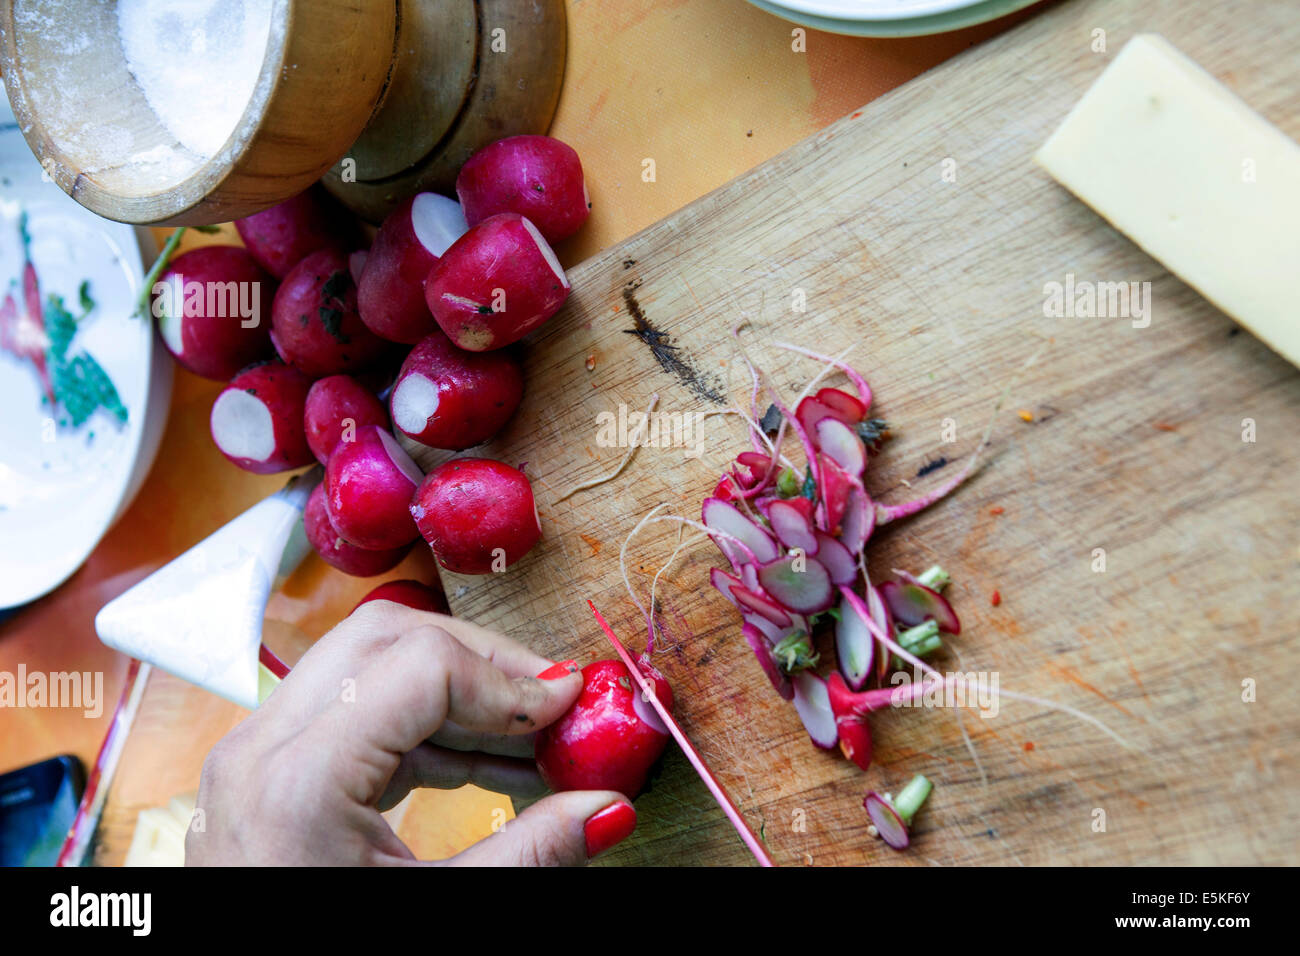 Dettaglio del tagliere e del coltello che tagliano ravanelli freschi Foto Stock